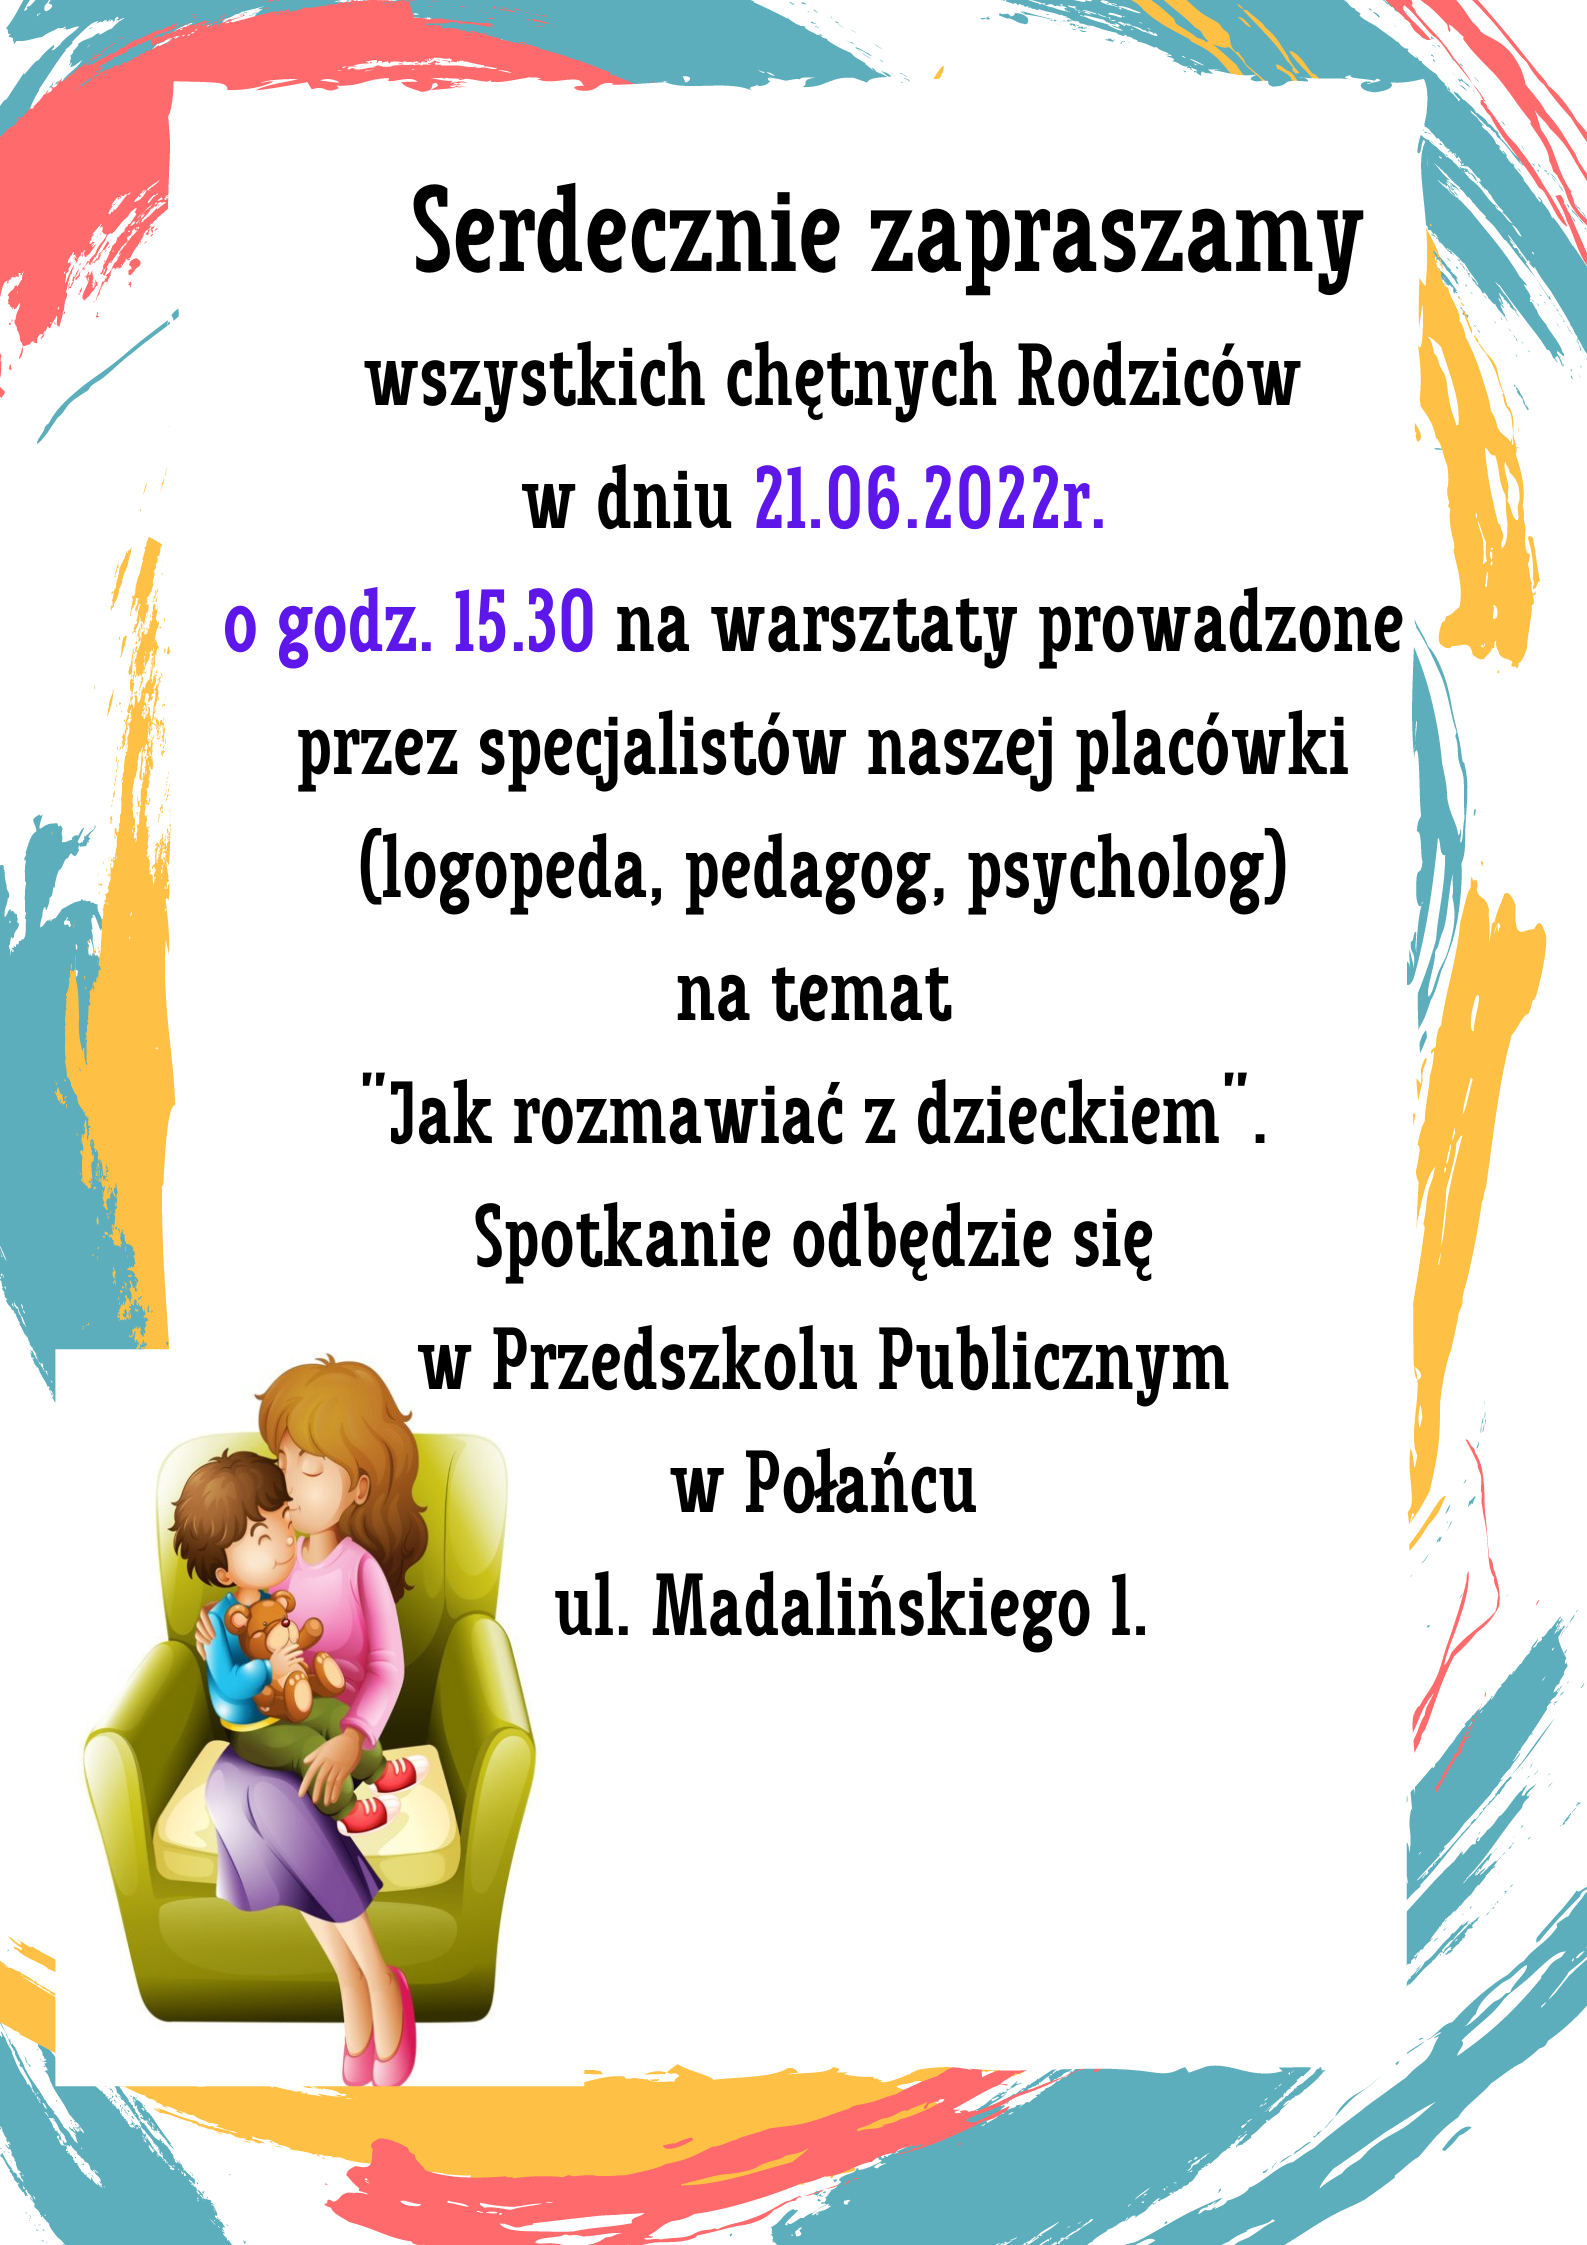 Dnia 13.06.2022r. o godz. 15.00 odbędą się w Przedszkolu Publicznym w Połańcu ul. Madalińskiego 1 zajęcia otwarte dla nowych przedszkolaków. Podczas spotkania będzie można zwiedzać placówkę uzyskać wszystkie